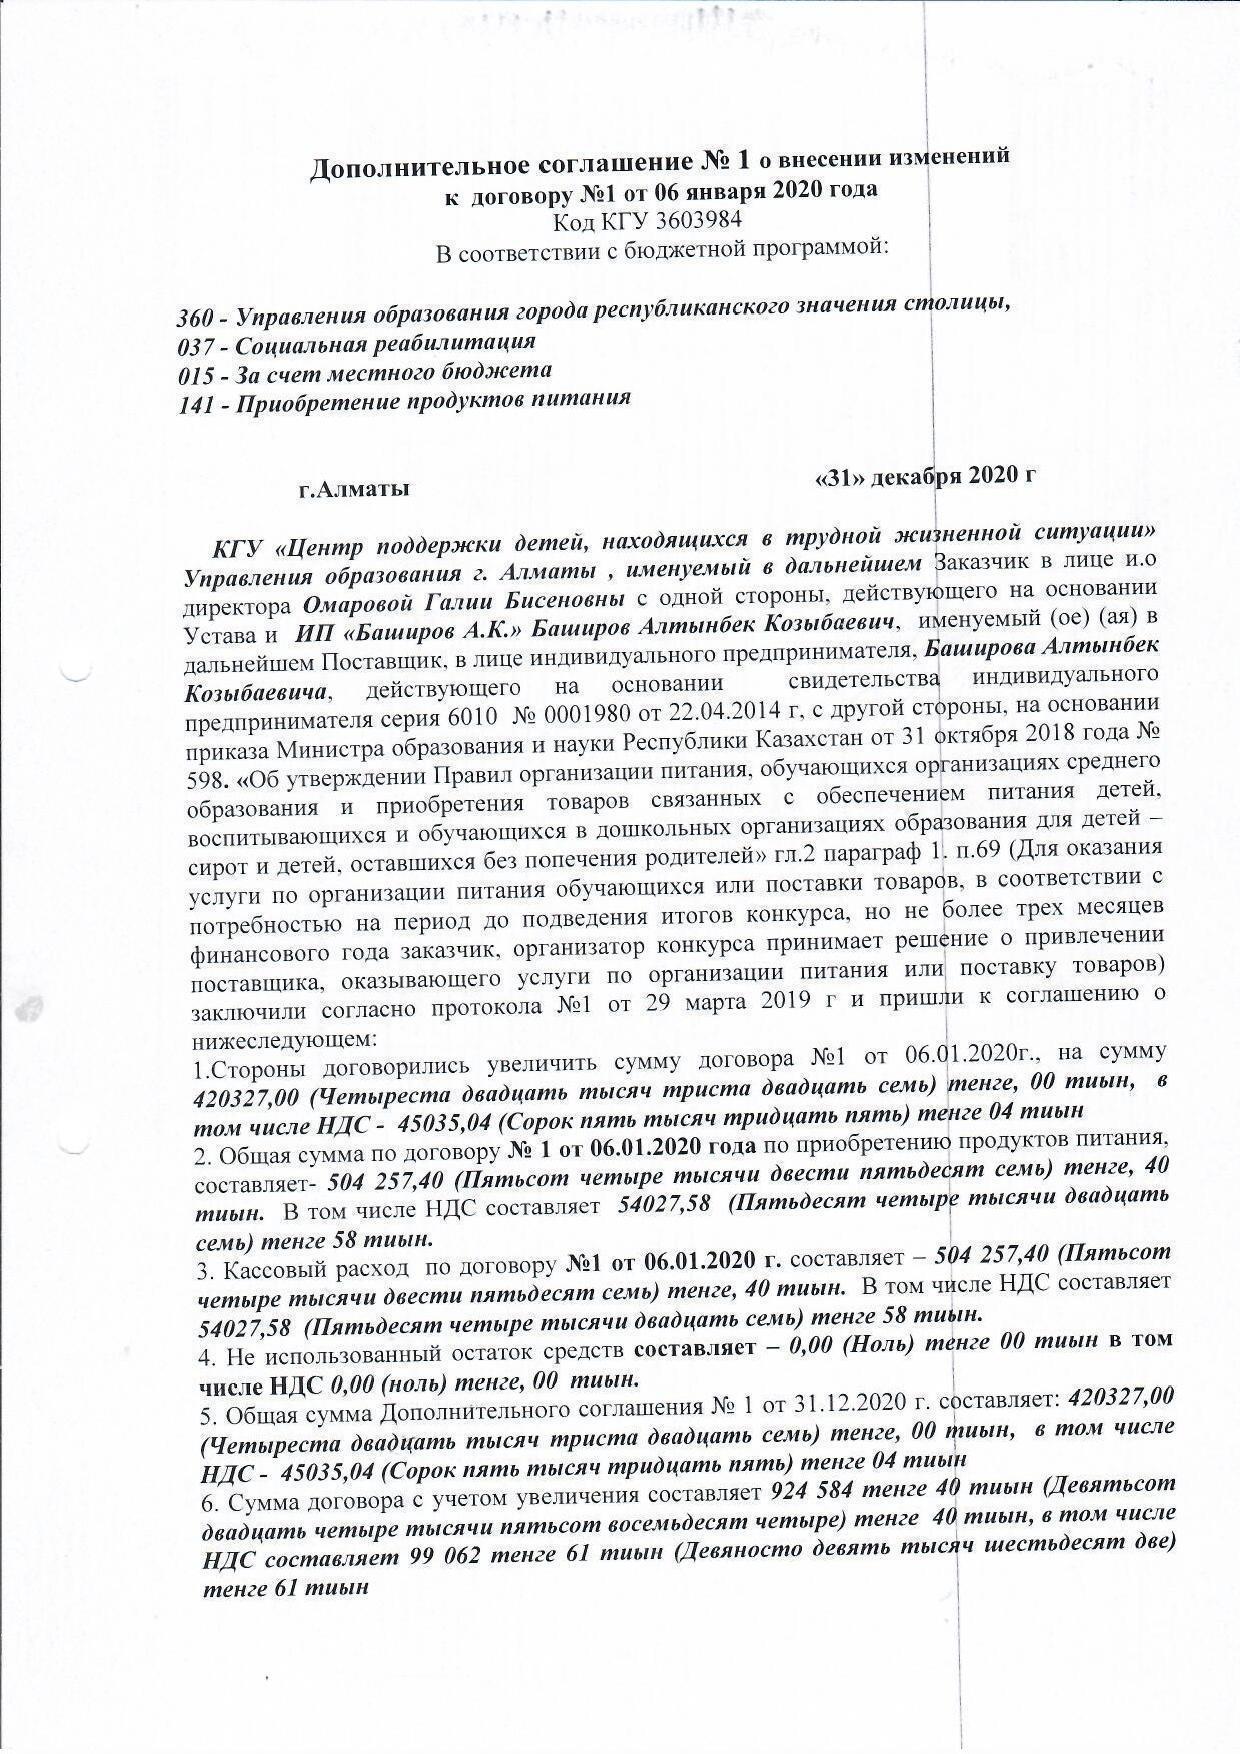 Дополнительное соглашение №1 к договору №1 от 06.01.2020 г ИП "Баширов А.К"